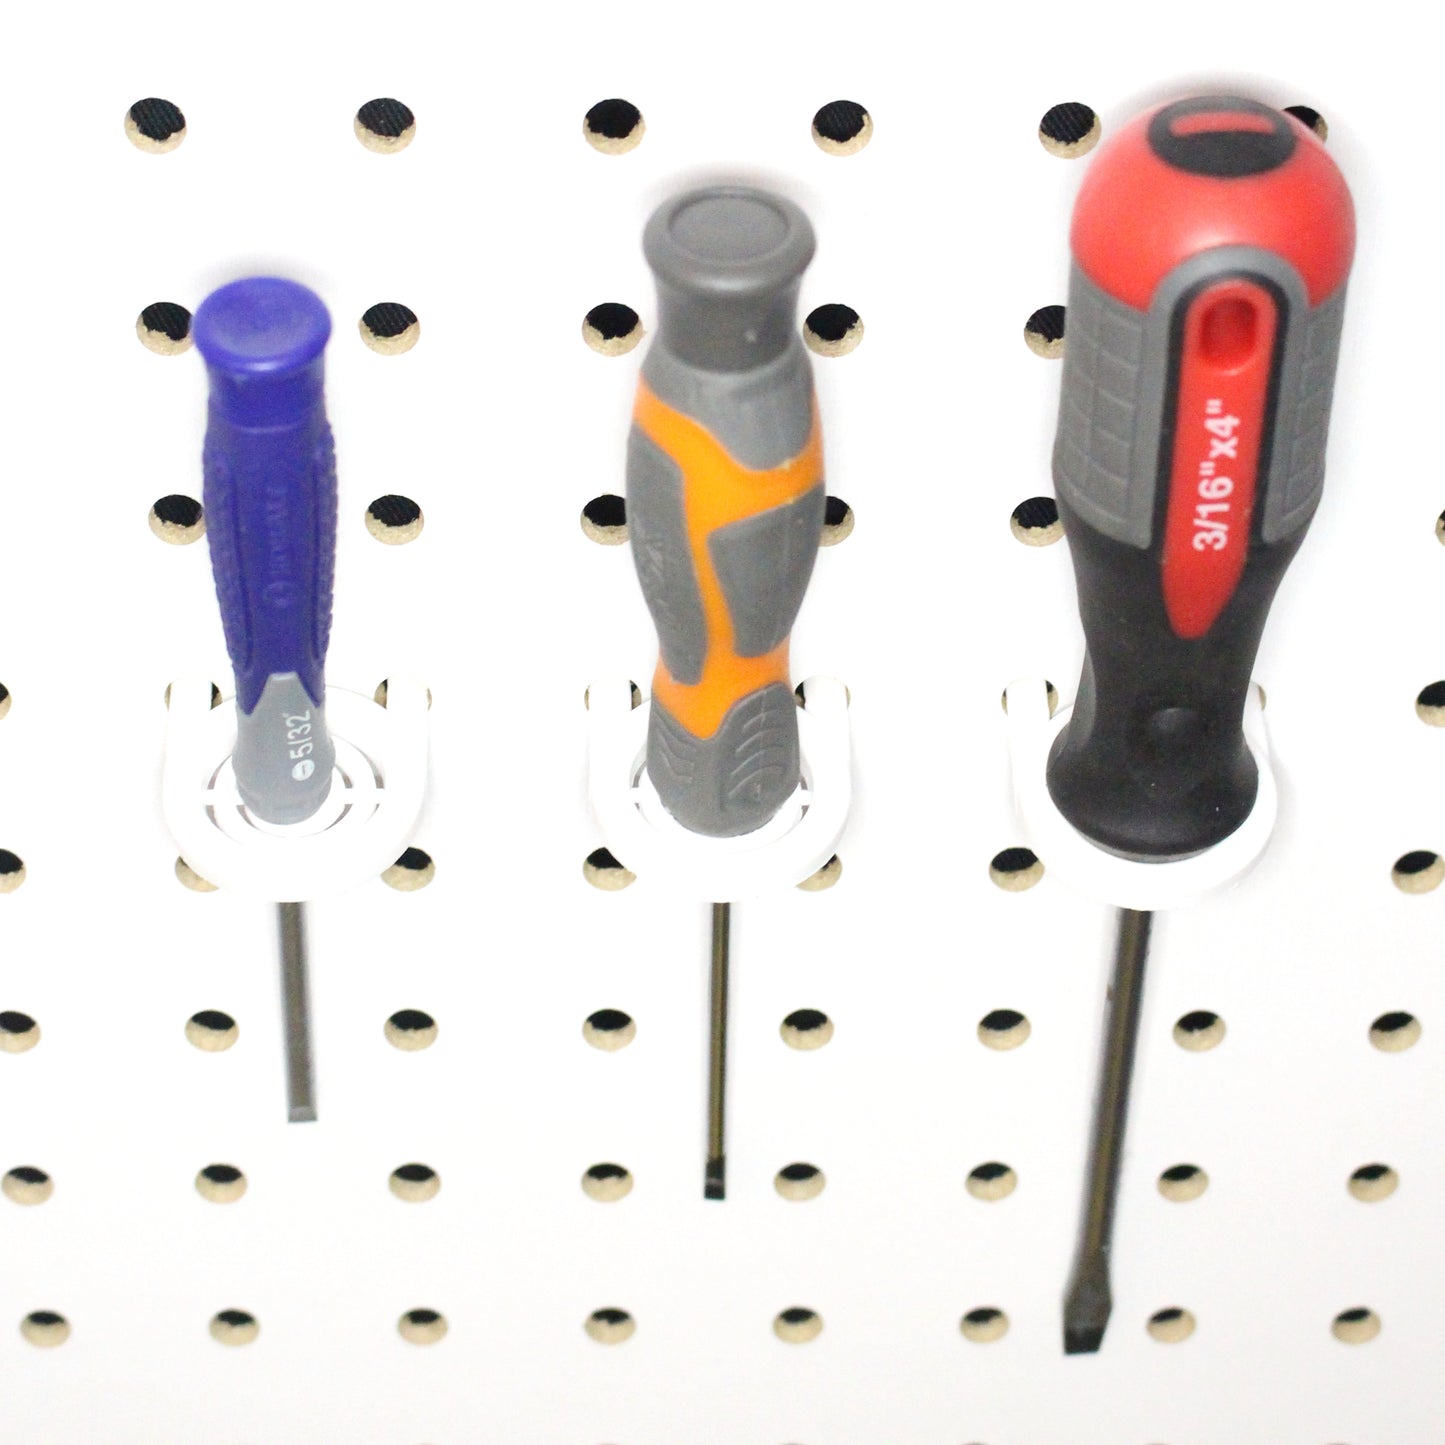 Multi-Purpose Tool Holders Plastic Pegboard Wall Hooks| Wall Tool Organizer Holder Garage Pegboard